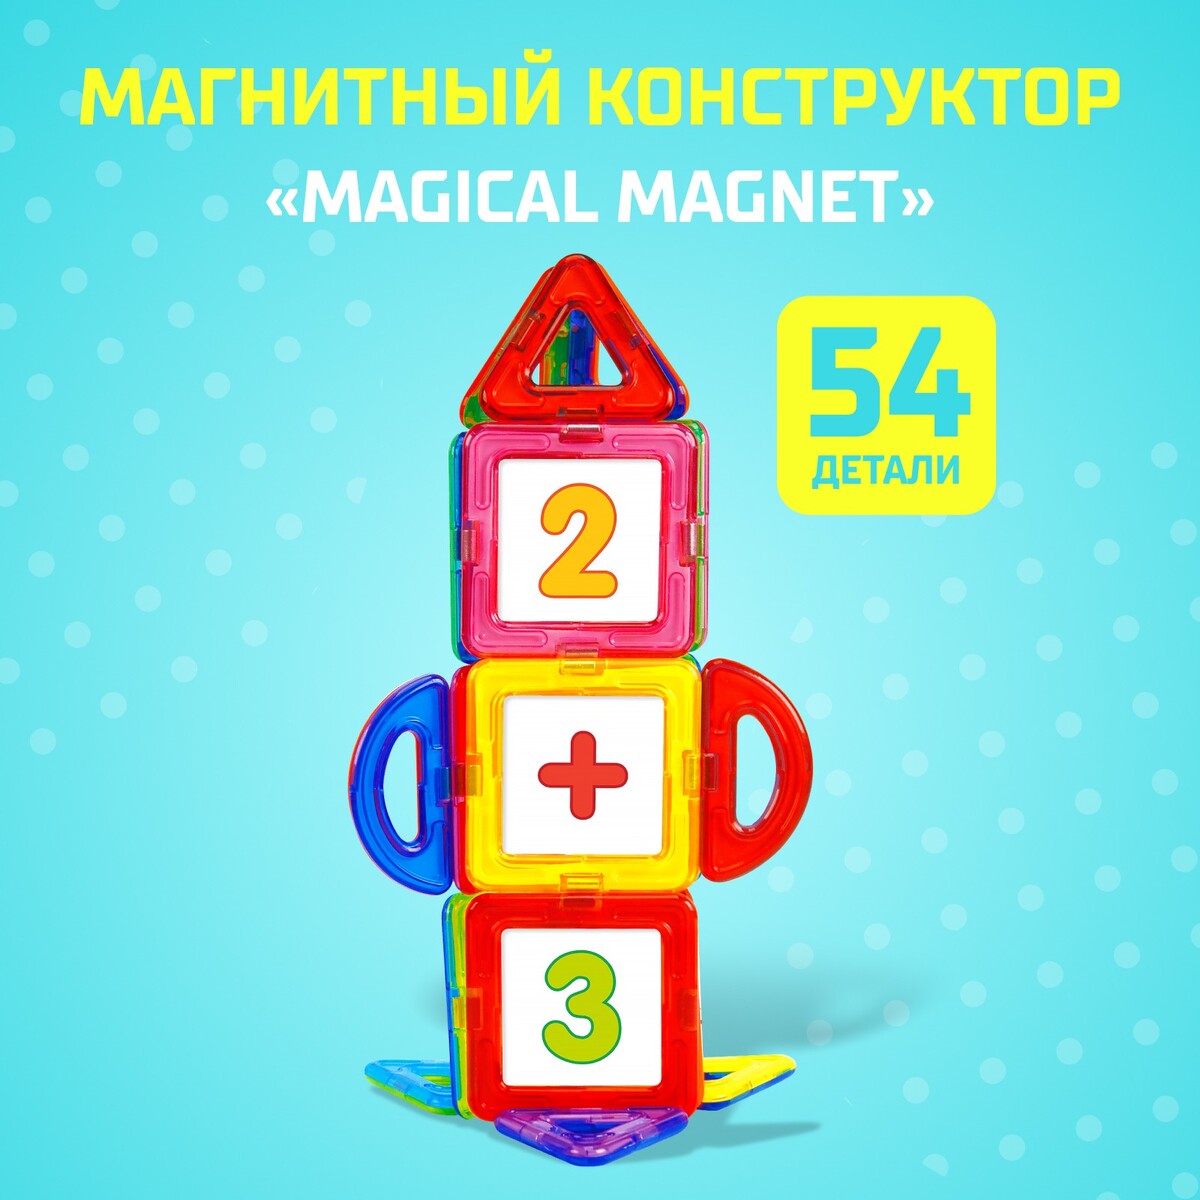 Магнитный конструктор magical magnet, 54 детали, детали матовые магнитный конструктор magical magnet 61 деталь unicon